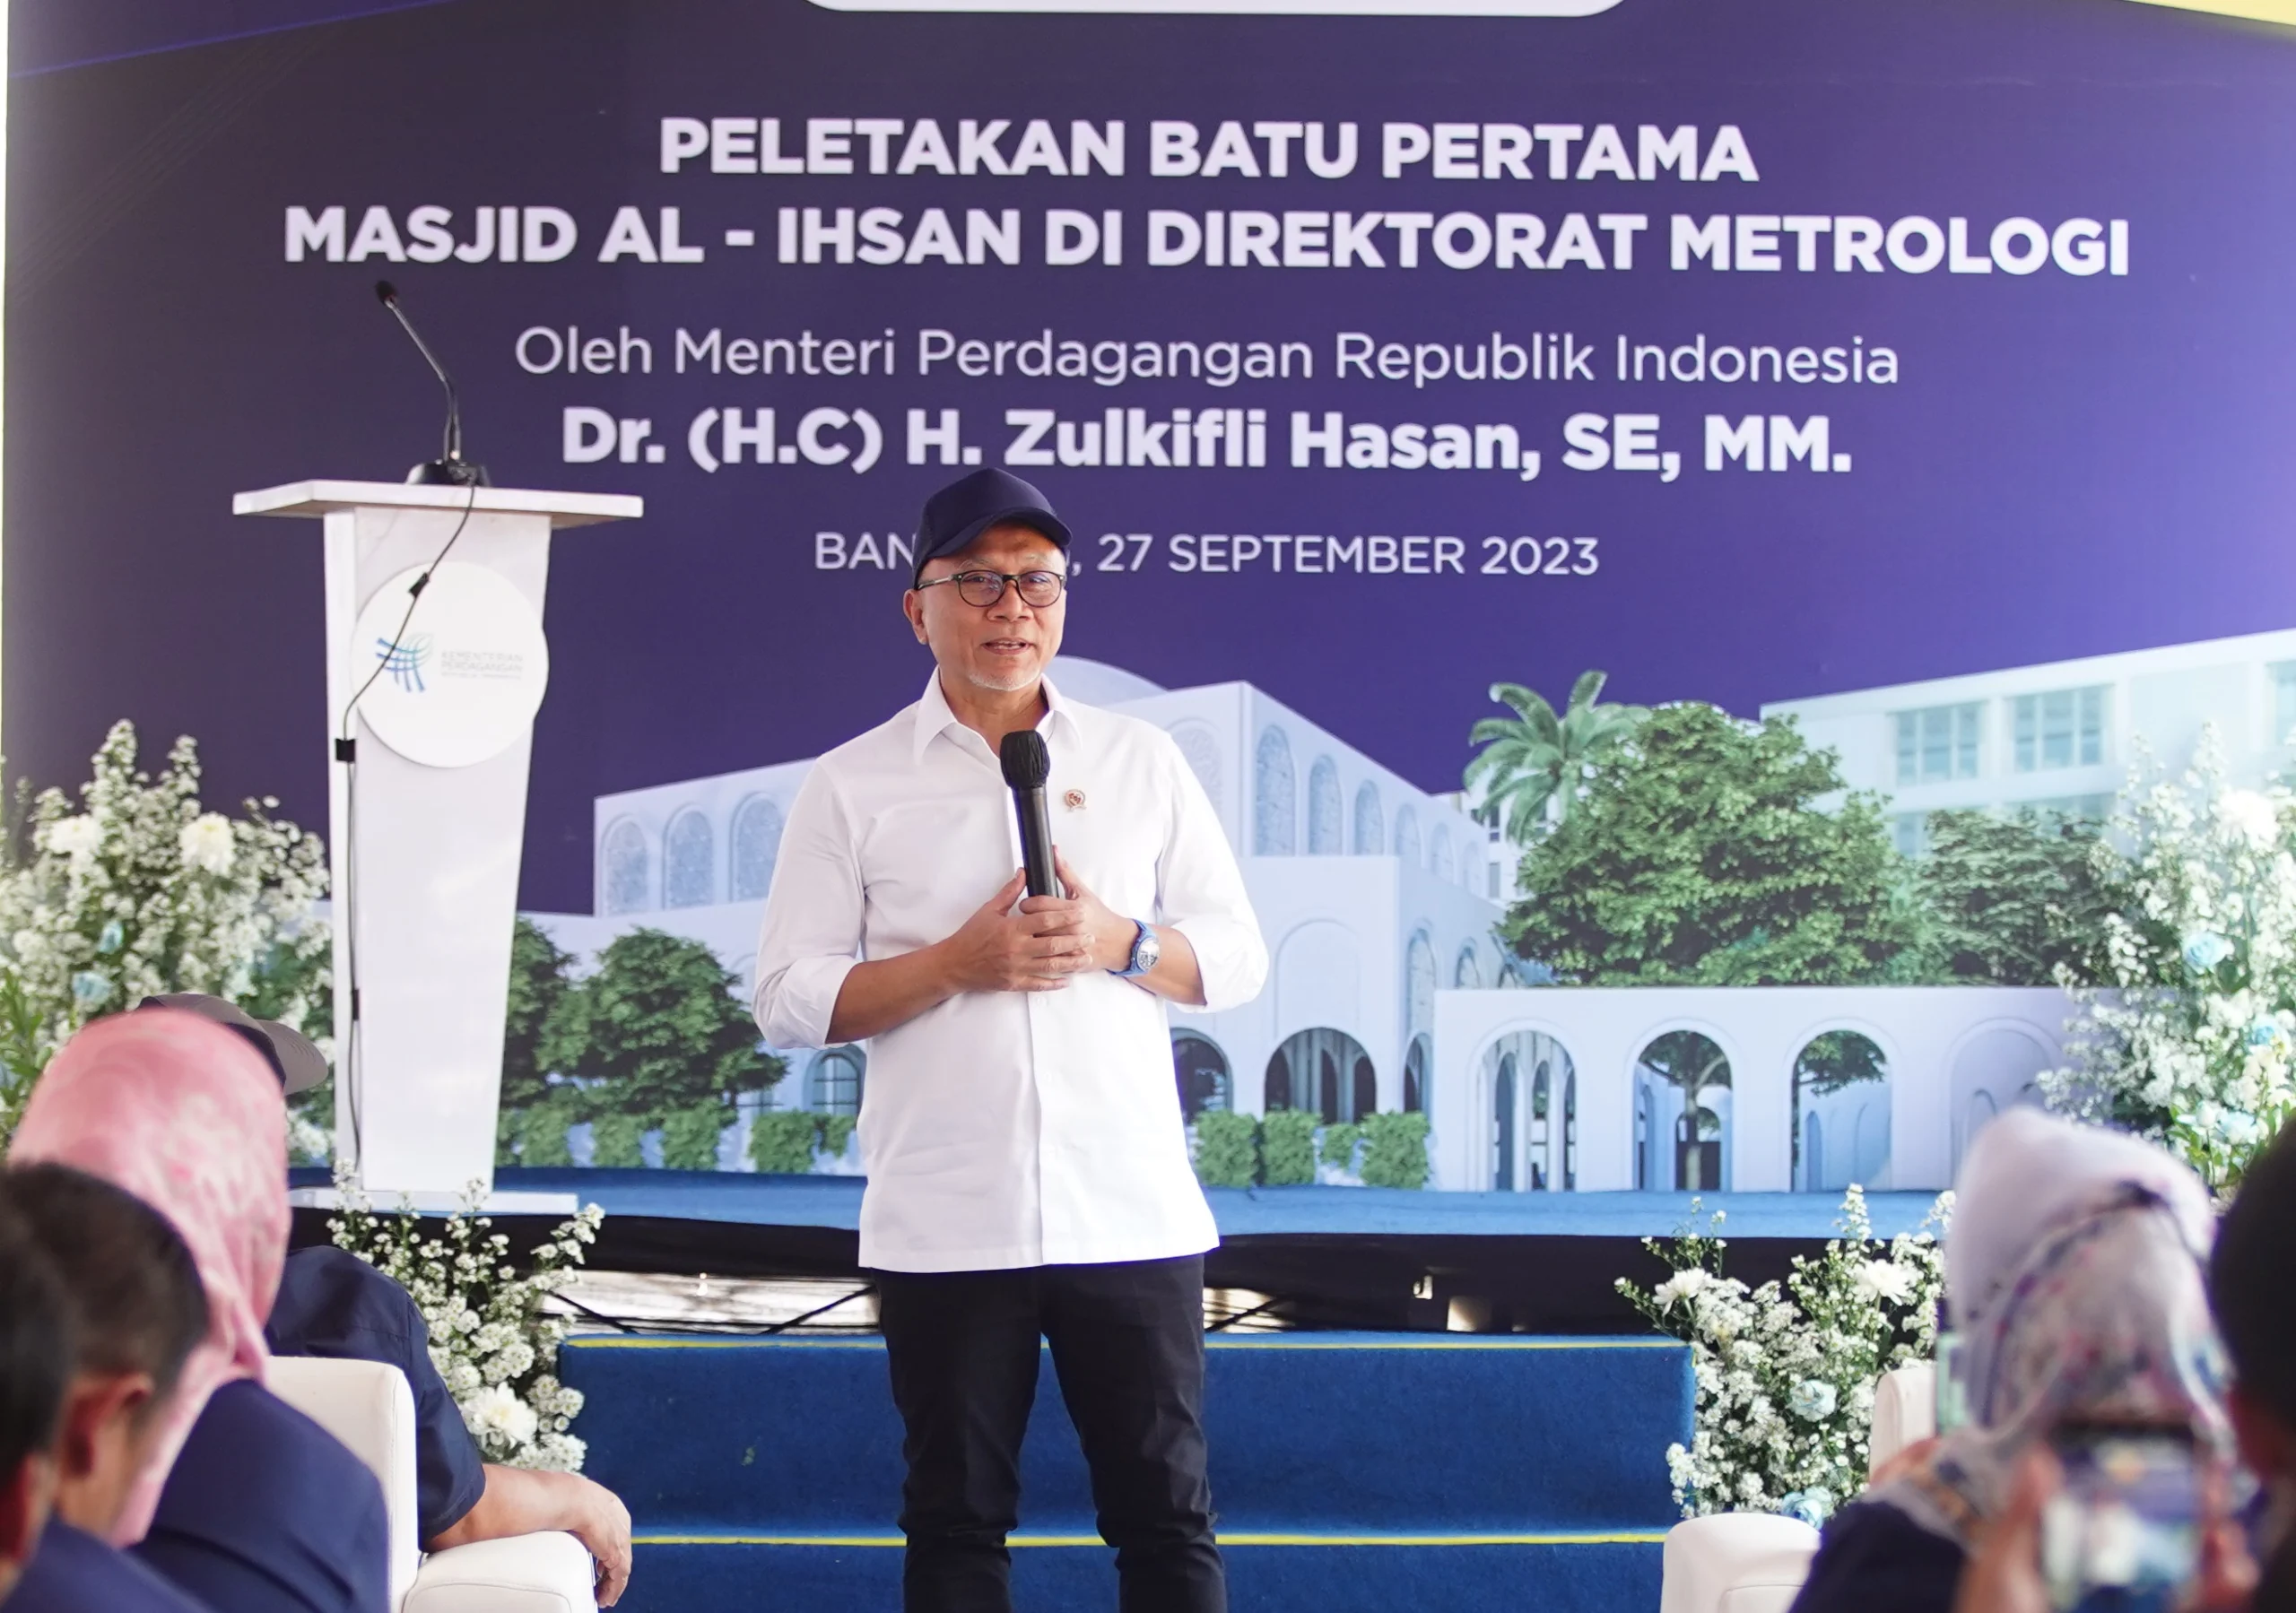 Menteri Perdagangan Zulkifli Hasan meletakan batu pertama untuk pembangunan masjid Al-Ihsan di kantor Direktorat Metrologi Kota Bandung,